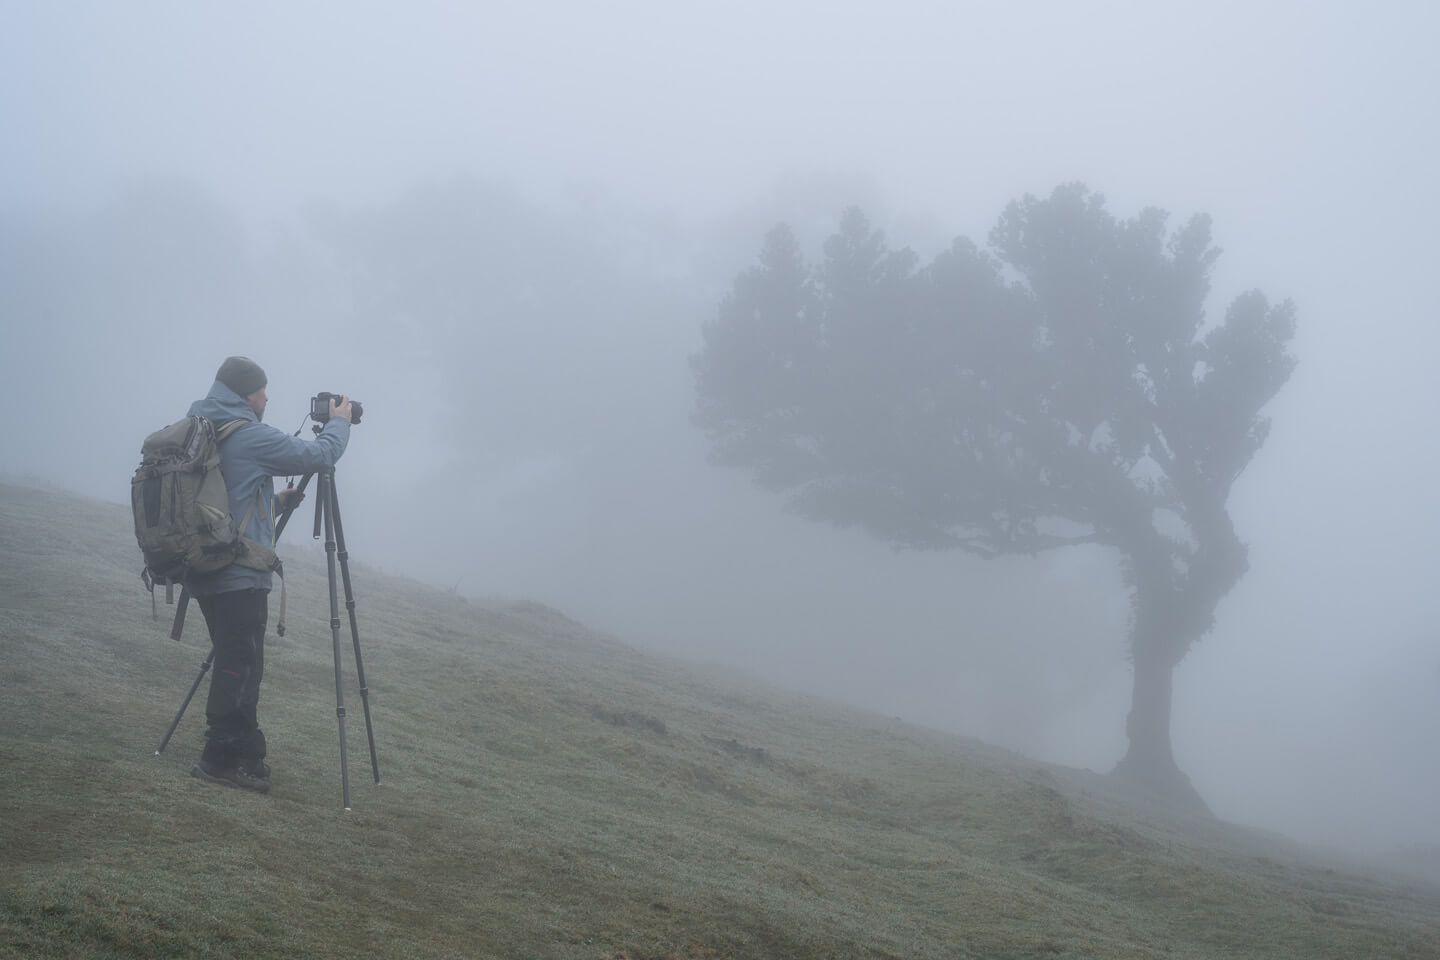 Fotograf Florian Läufer bei einer Fotoreise in den Lorbeerwald auf Madeira.